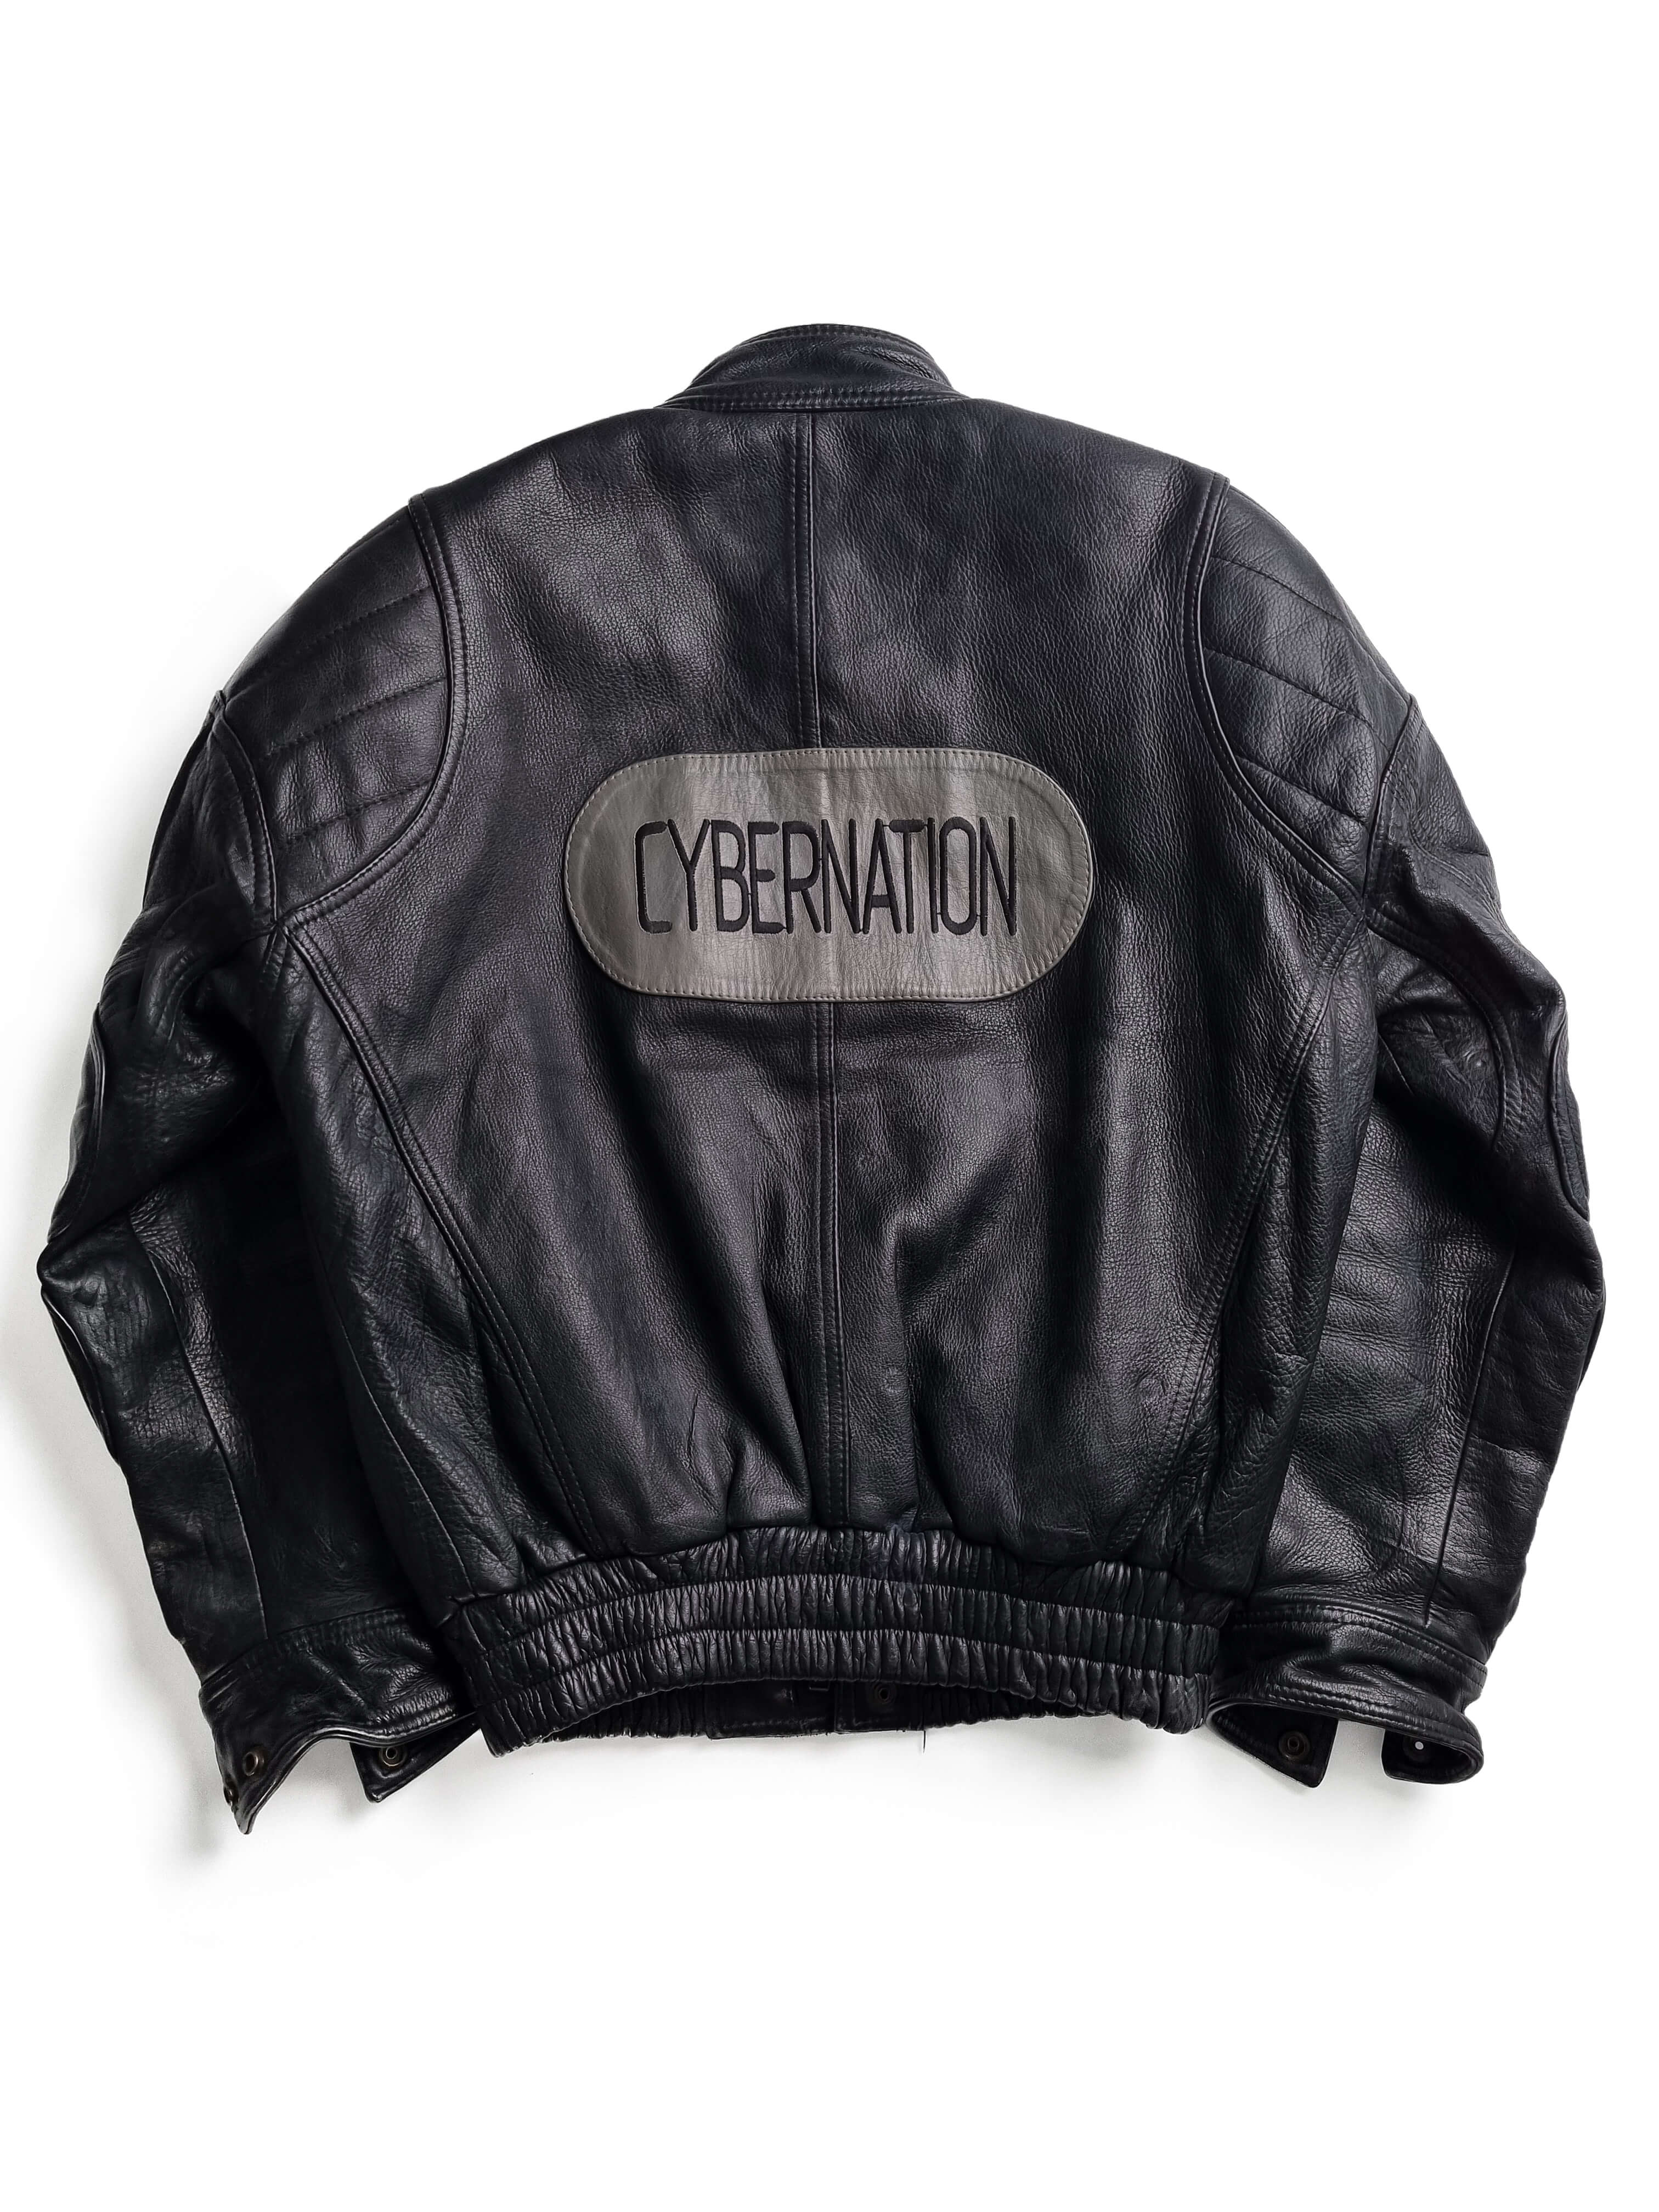 Kadoya x Akira cybernation kaneda leather jacket